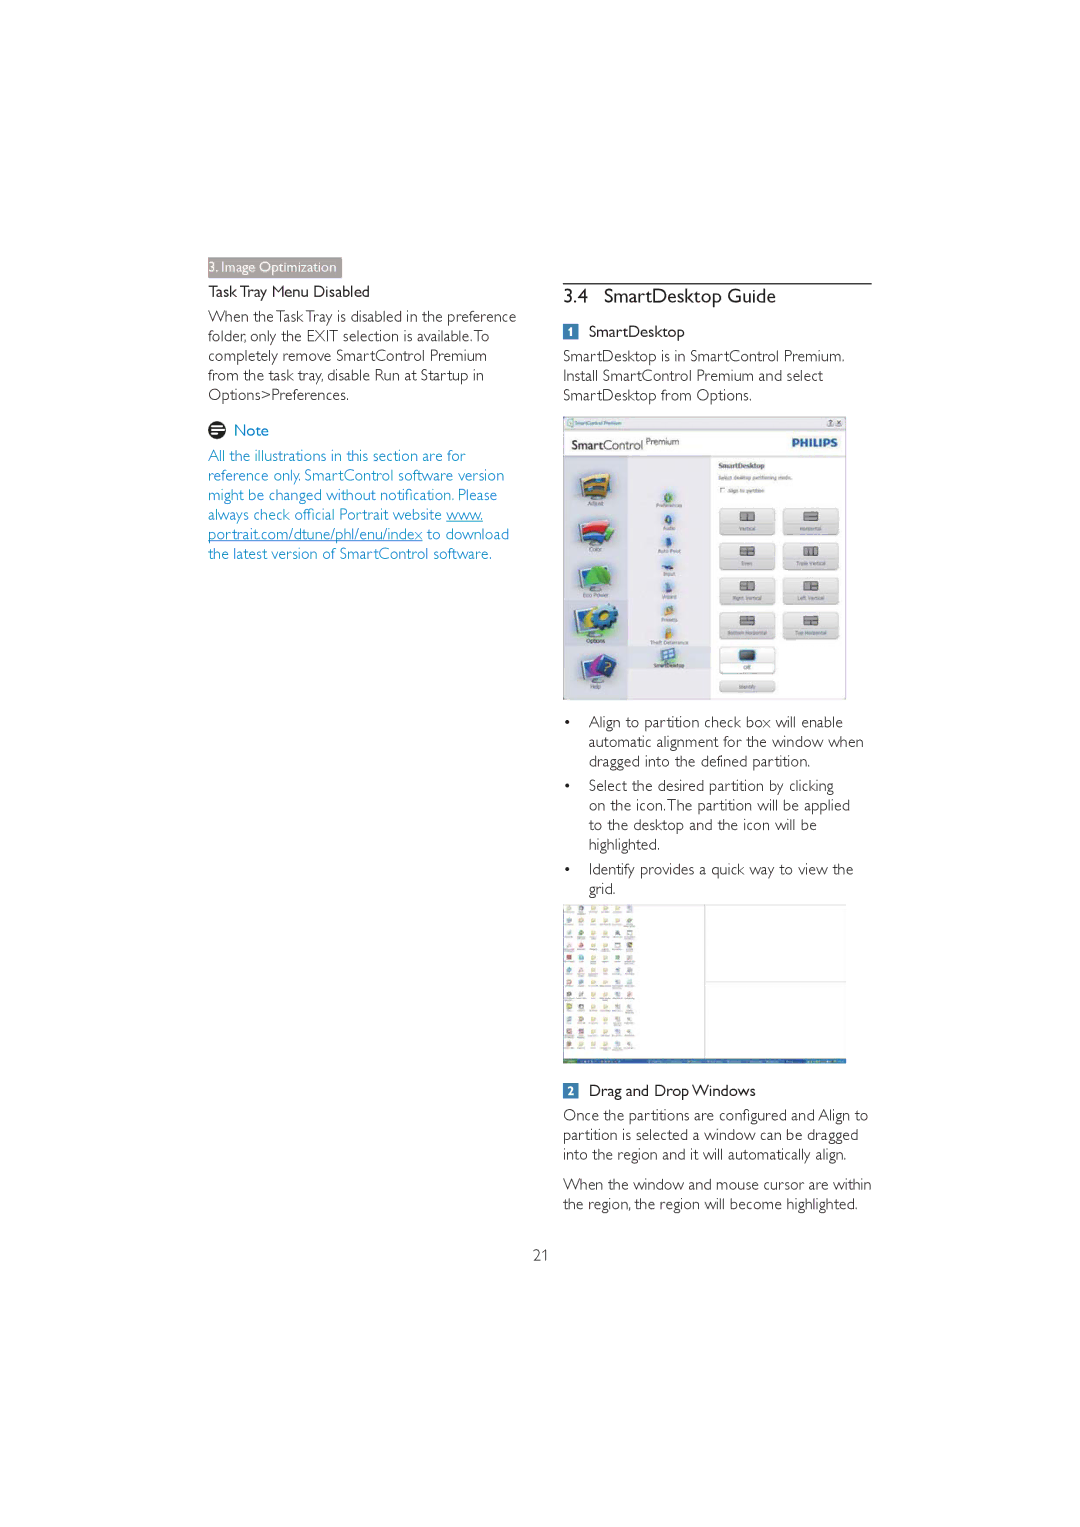 Philips 272P4 user manual SmartDesktop Guide, Task Tray Menu Disabled 